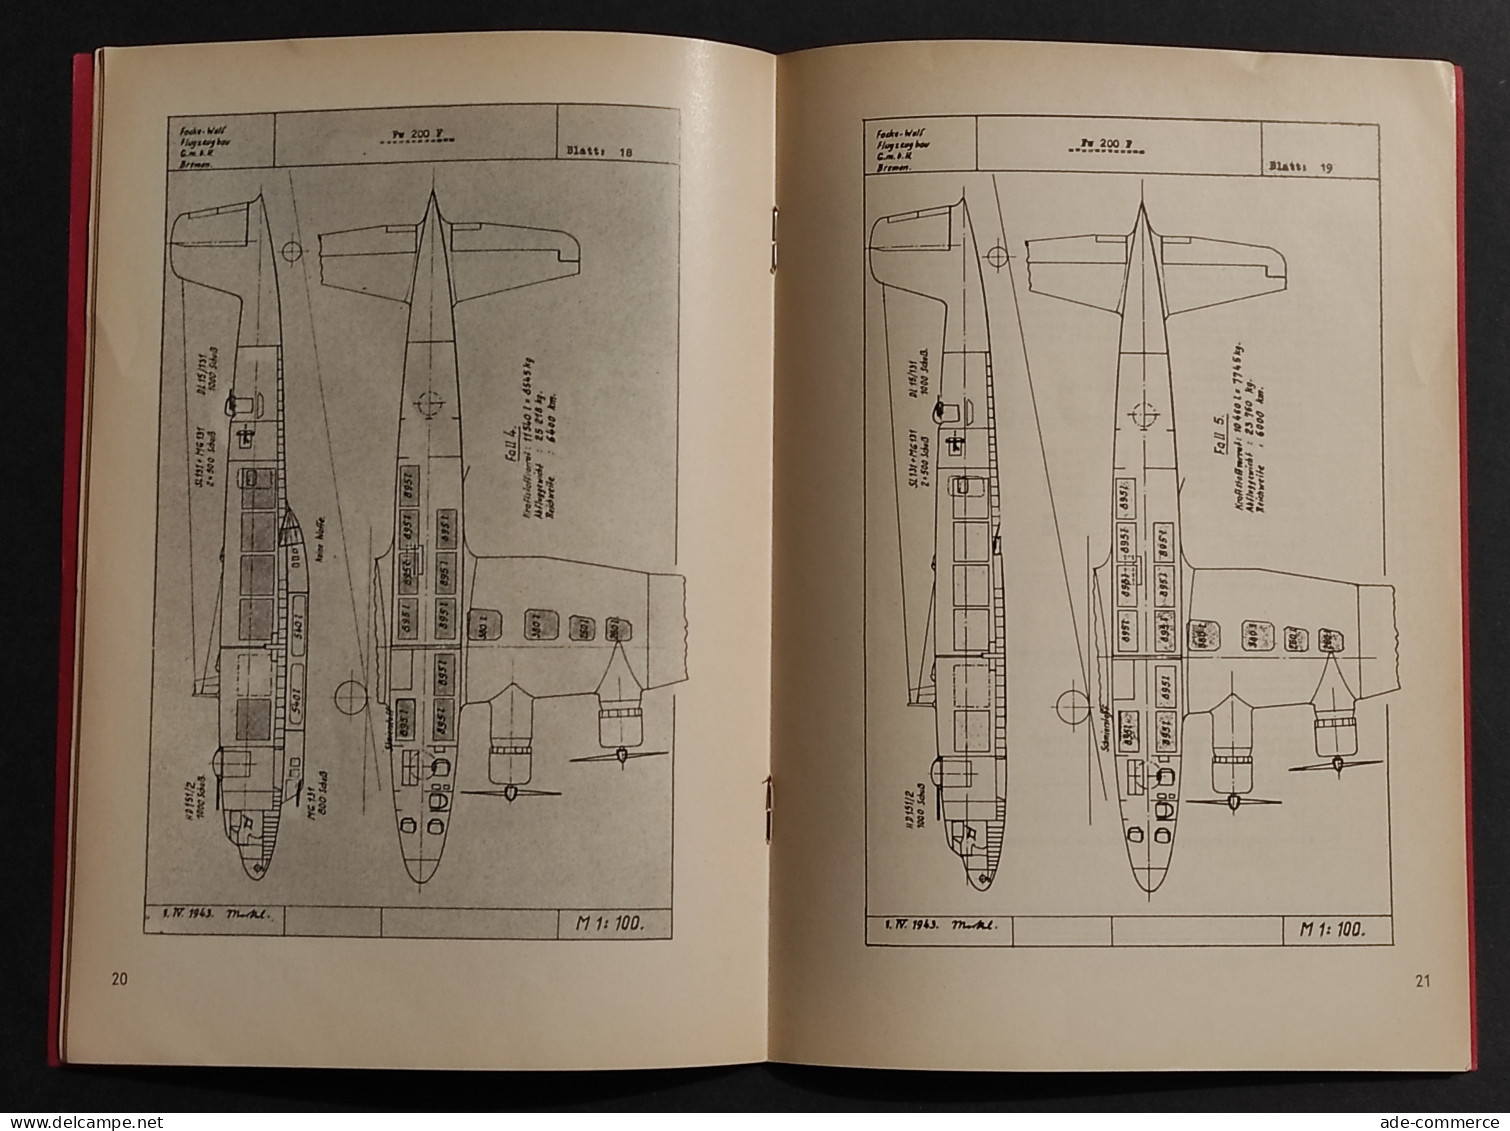 Beschreibung Focke-Wulf Fw 200 F - Luftfarth Dokumente LD9 - Moteurs